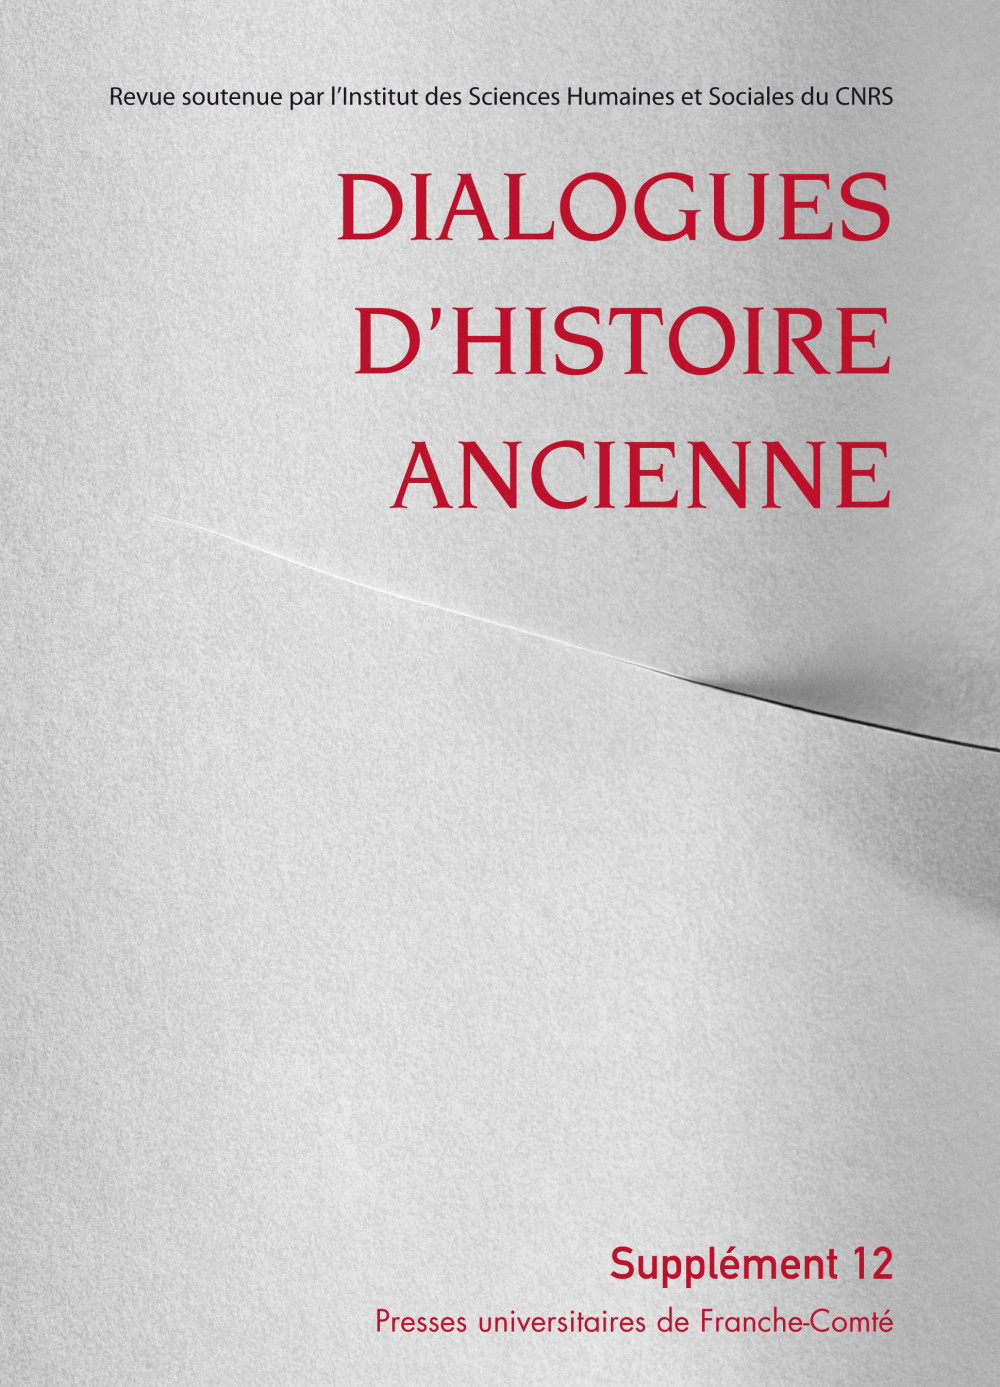 Dialogues d’Histoire Ancienne supplément 12